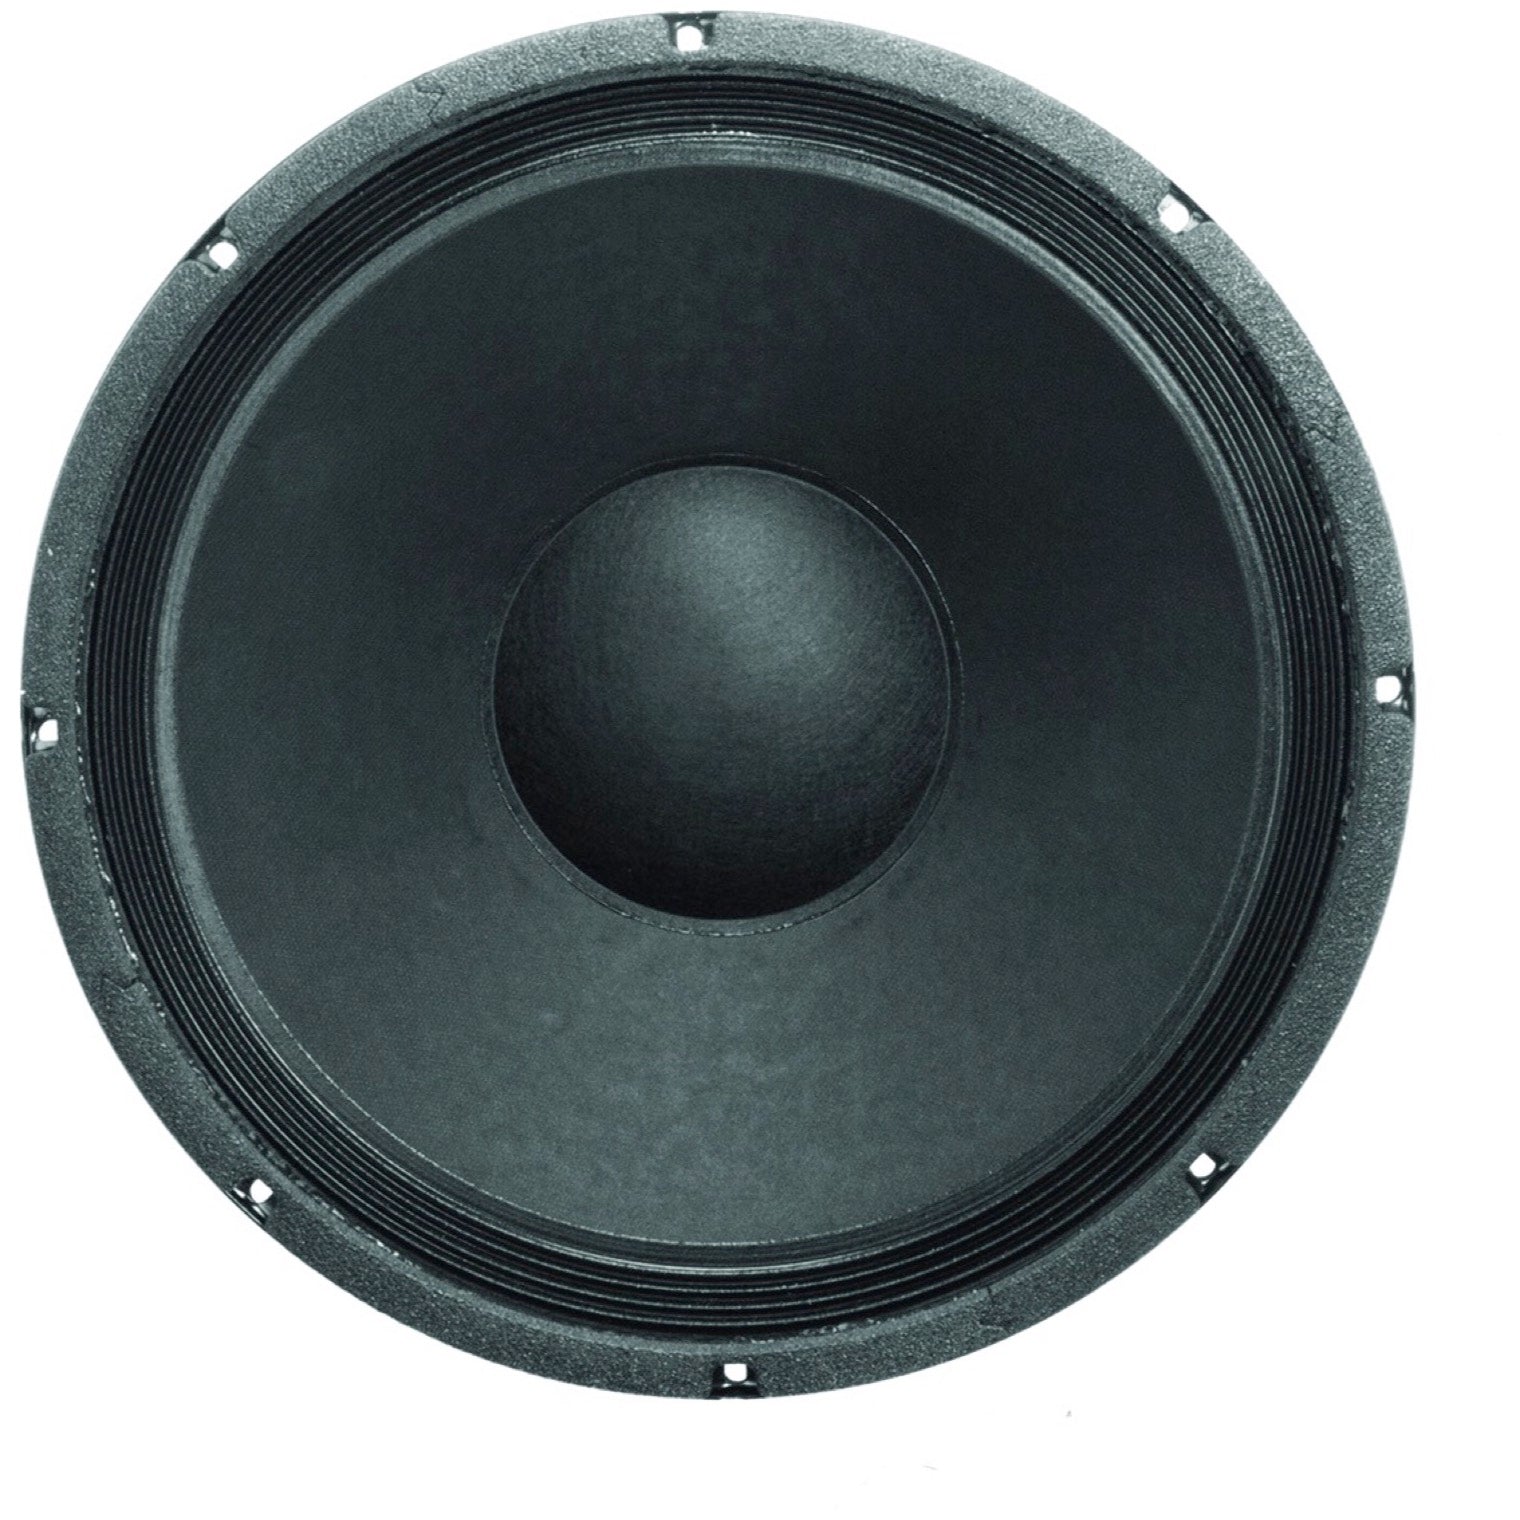 Eminence Legend BP1525 Bass Speaker (350 Watts), 8 Ohms, 15 Inch